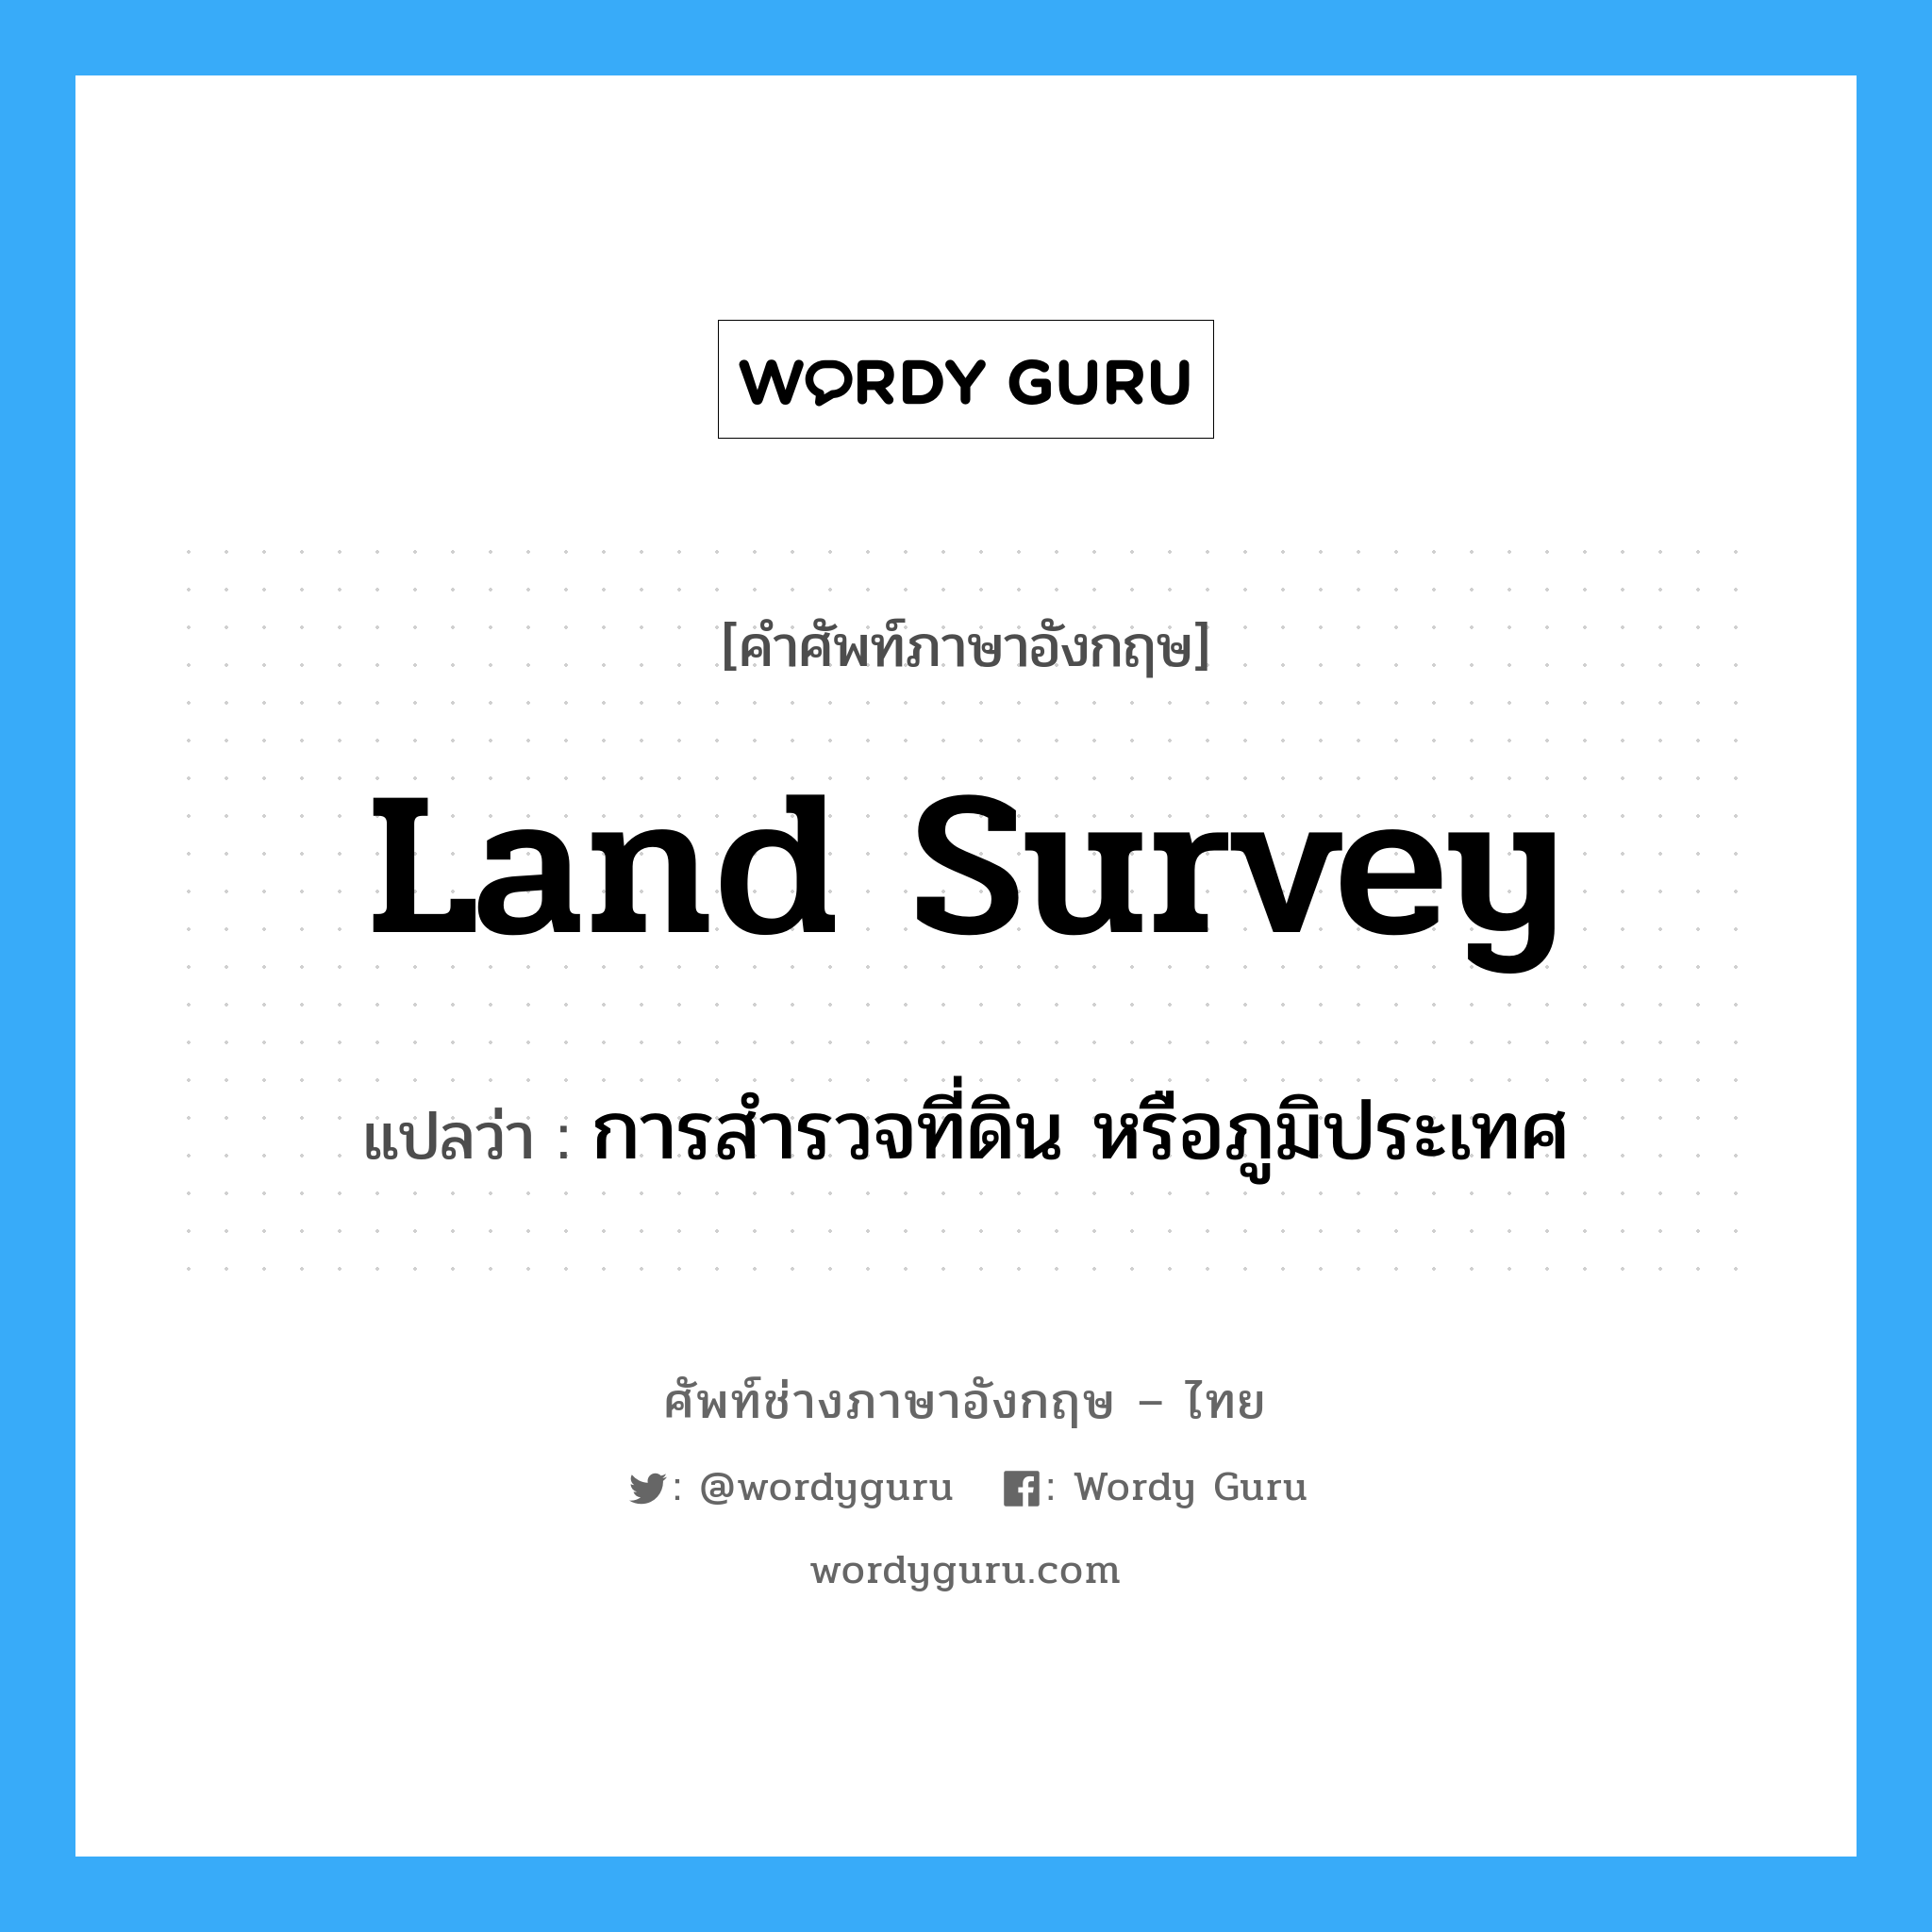 land survey แปลว่า?, คำศัพท์ช่างภาษาอังกฤษ - ไทย land survey คำศัพท์ภาษาอังกฤษ land survey แปลว่า การสำรวจที่ดิน หรือภูมิประเทศ